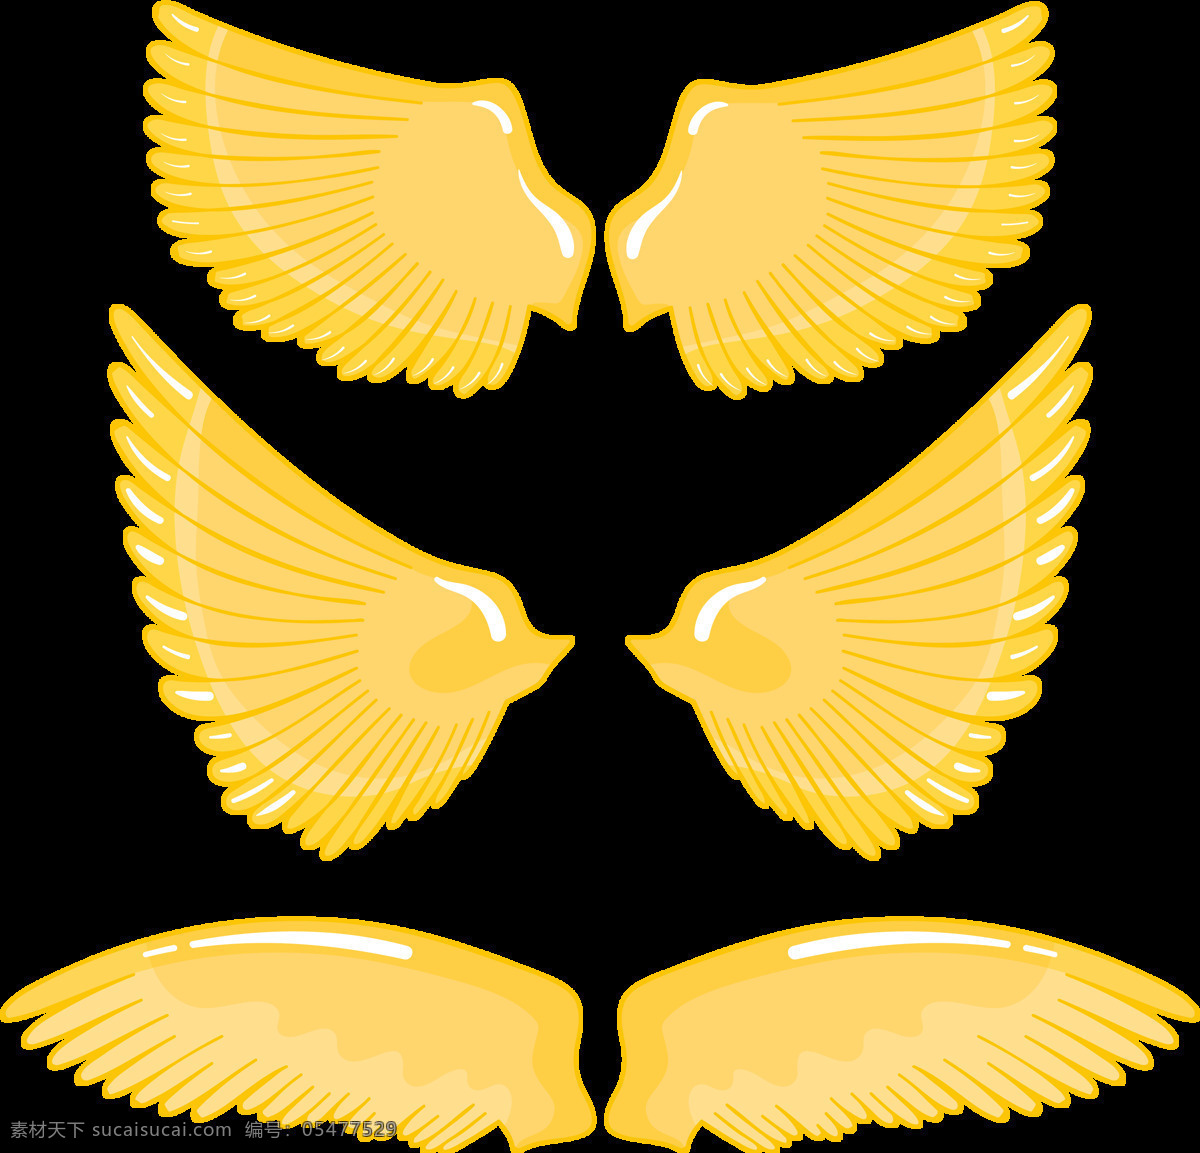 各种 形状 黄色 翅膀 免 抠 透明 图 层 黄色翅膀 手绘翅膀 翅膀元素 小 天使 卡通翅膀 翅膀图片素材 纹身图案 翅膀素材 手绘翅膀图片